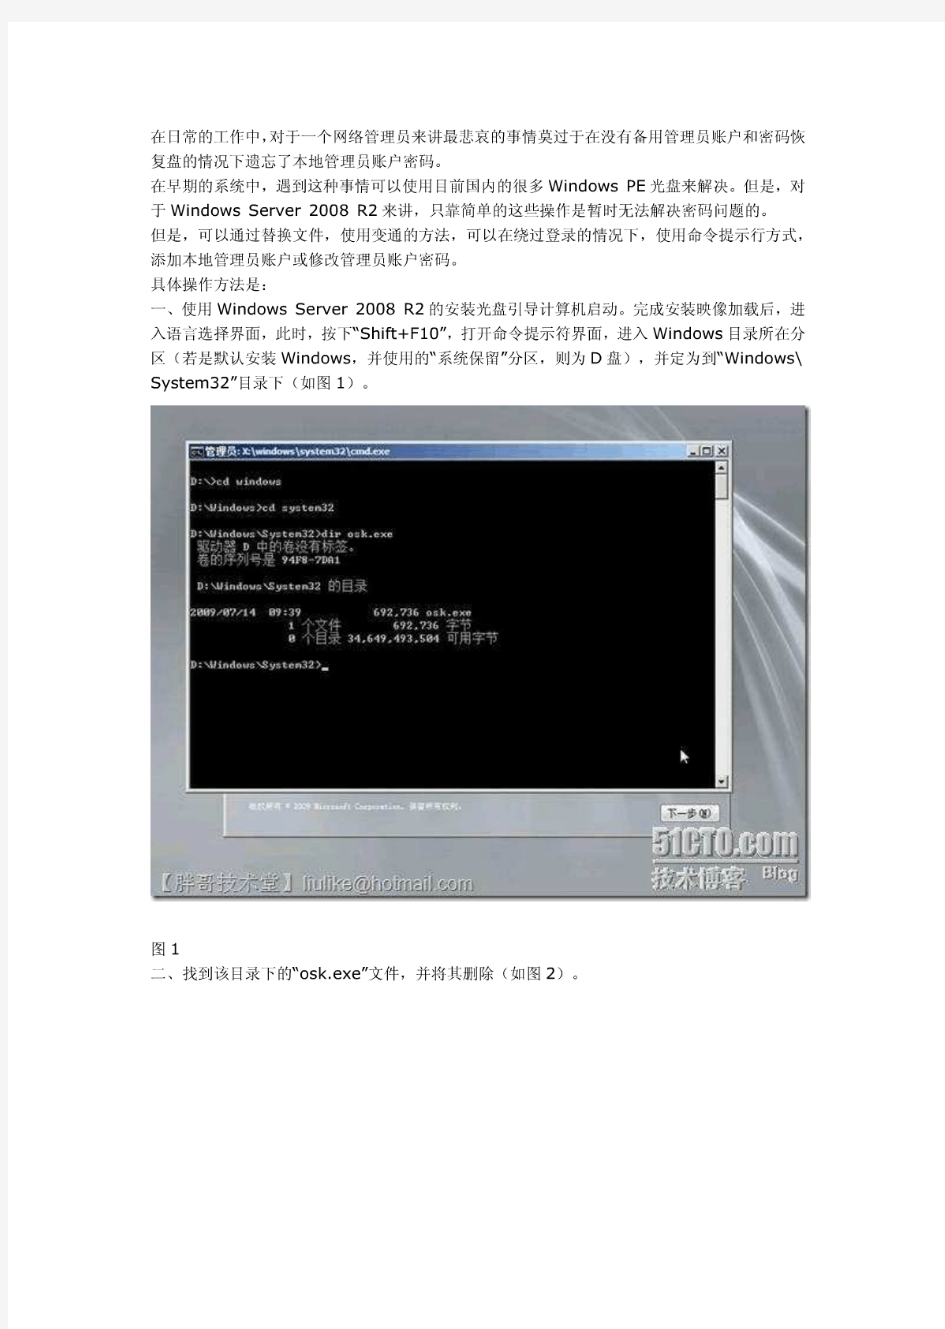 Windows Server 2008 R2遗忘管理员密码后的解决方案(转)